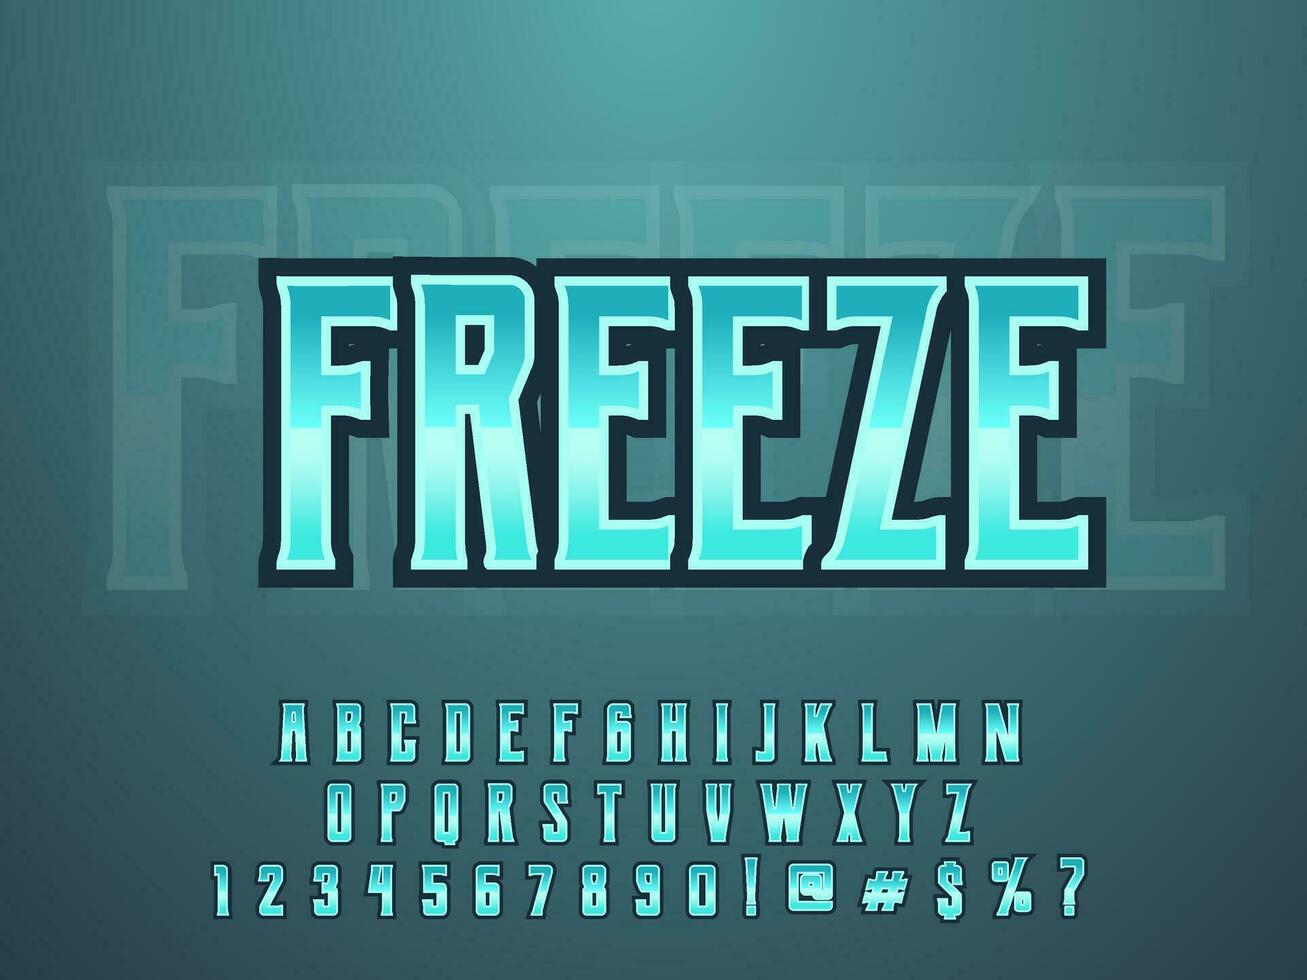 Ice freeze cool modern esport logo text effect vector